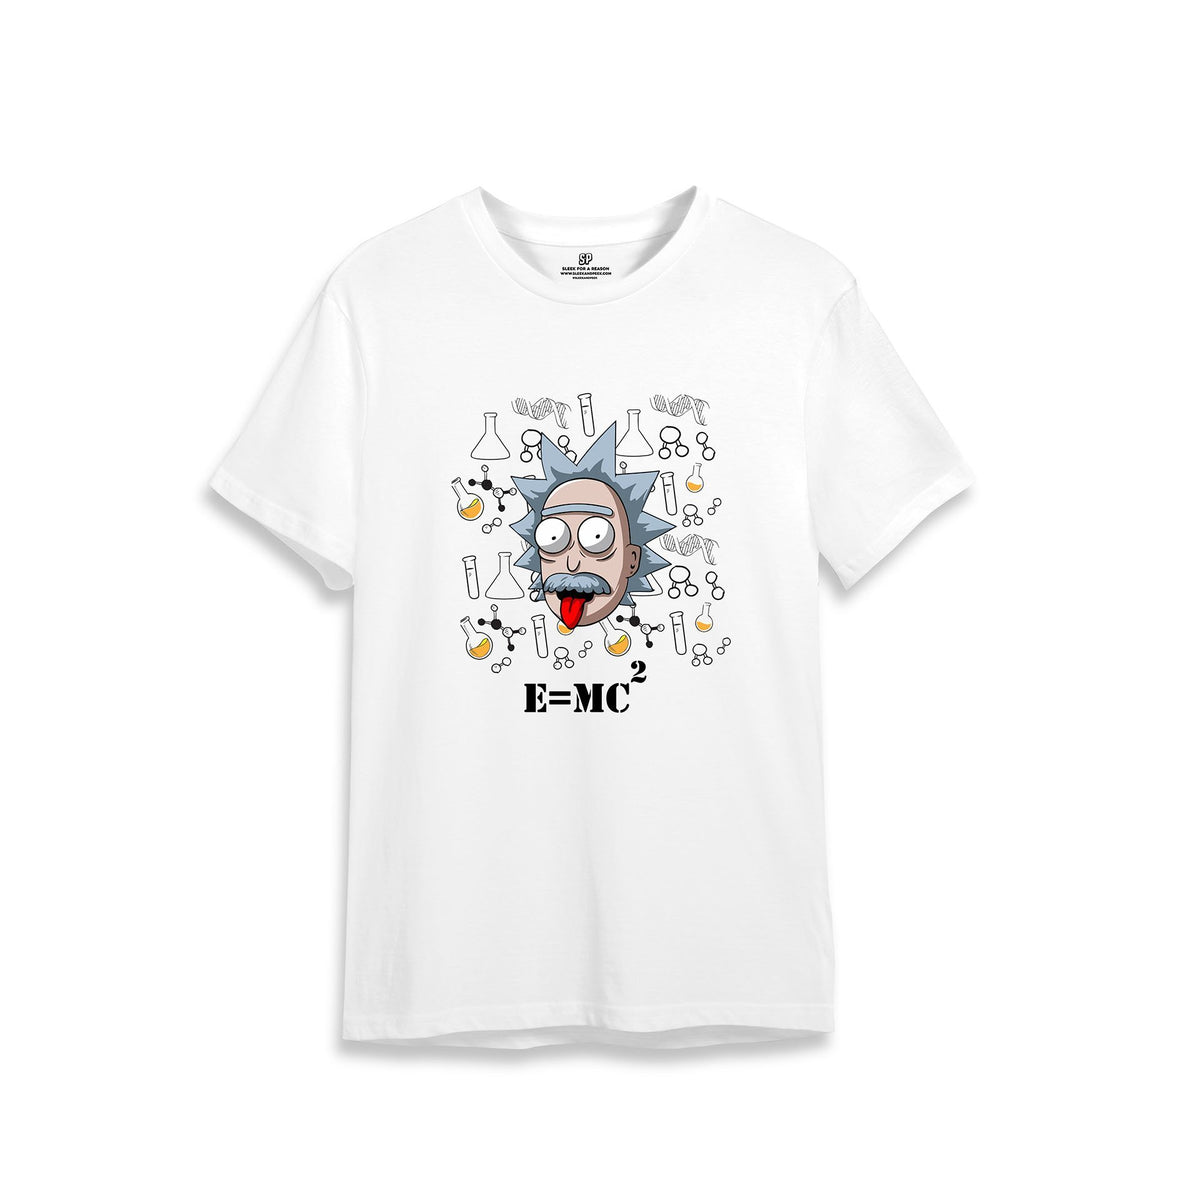 Rick and Morty (E=MC²) T-shirt - Sleek&Peek